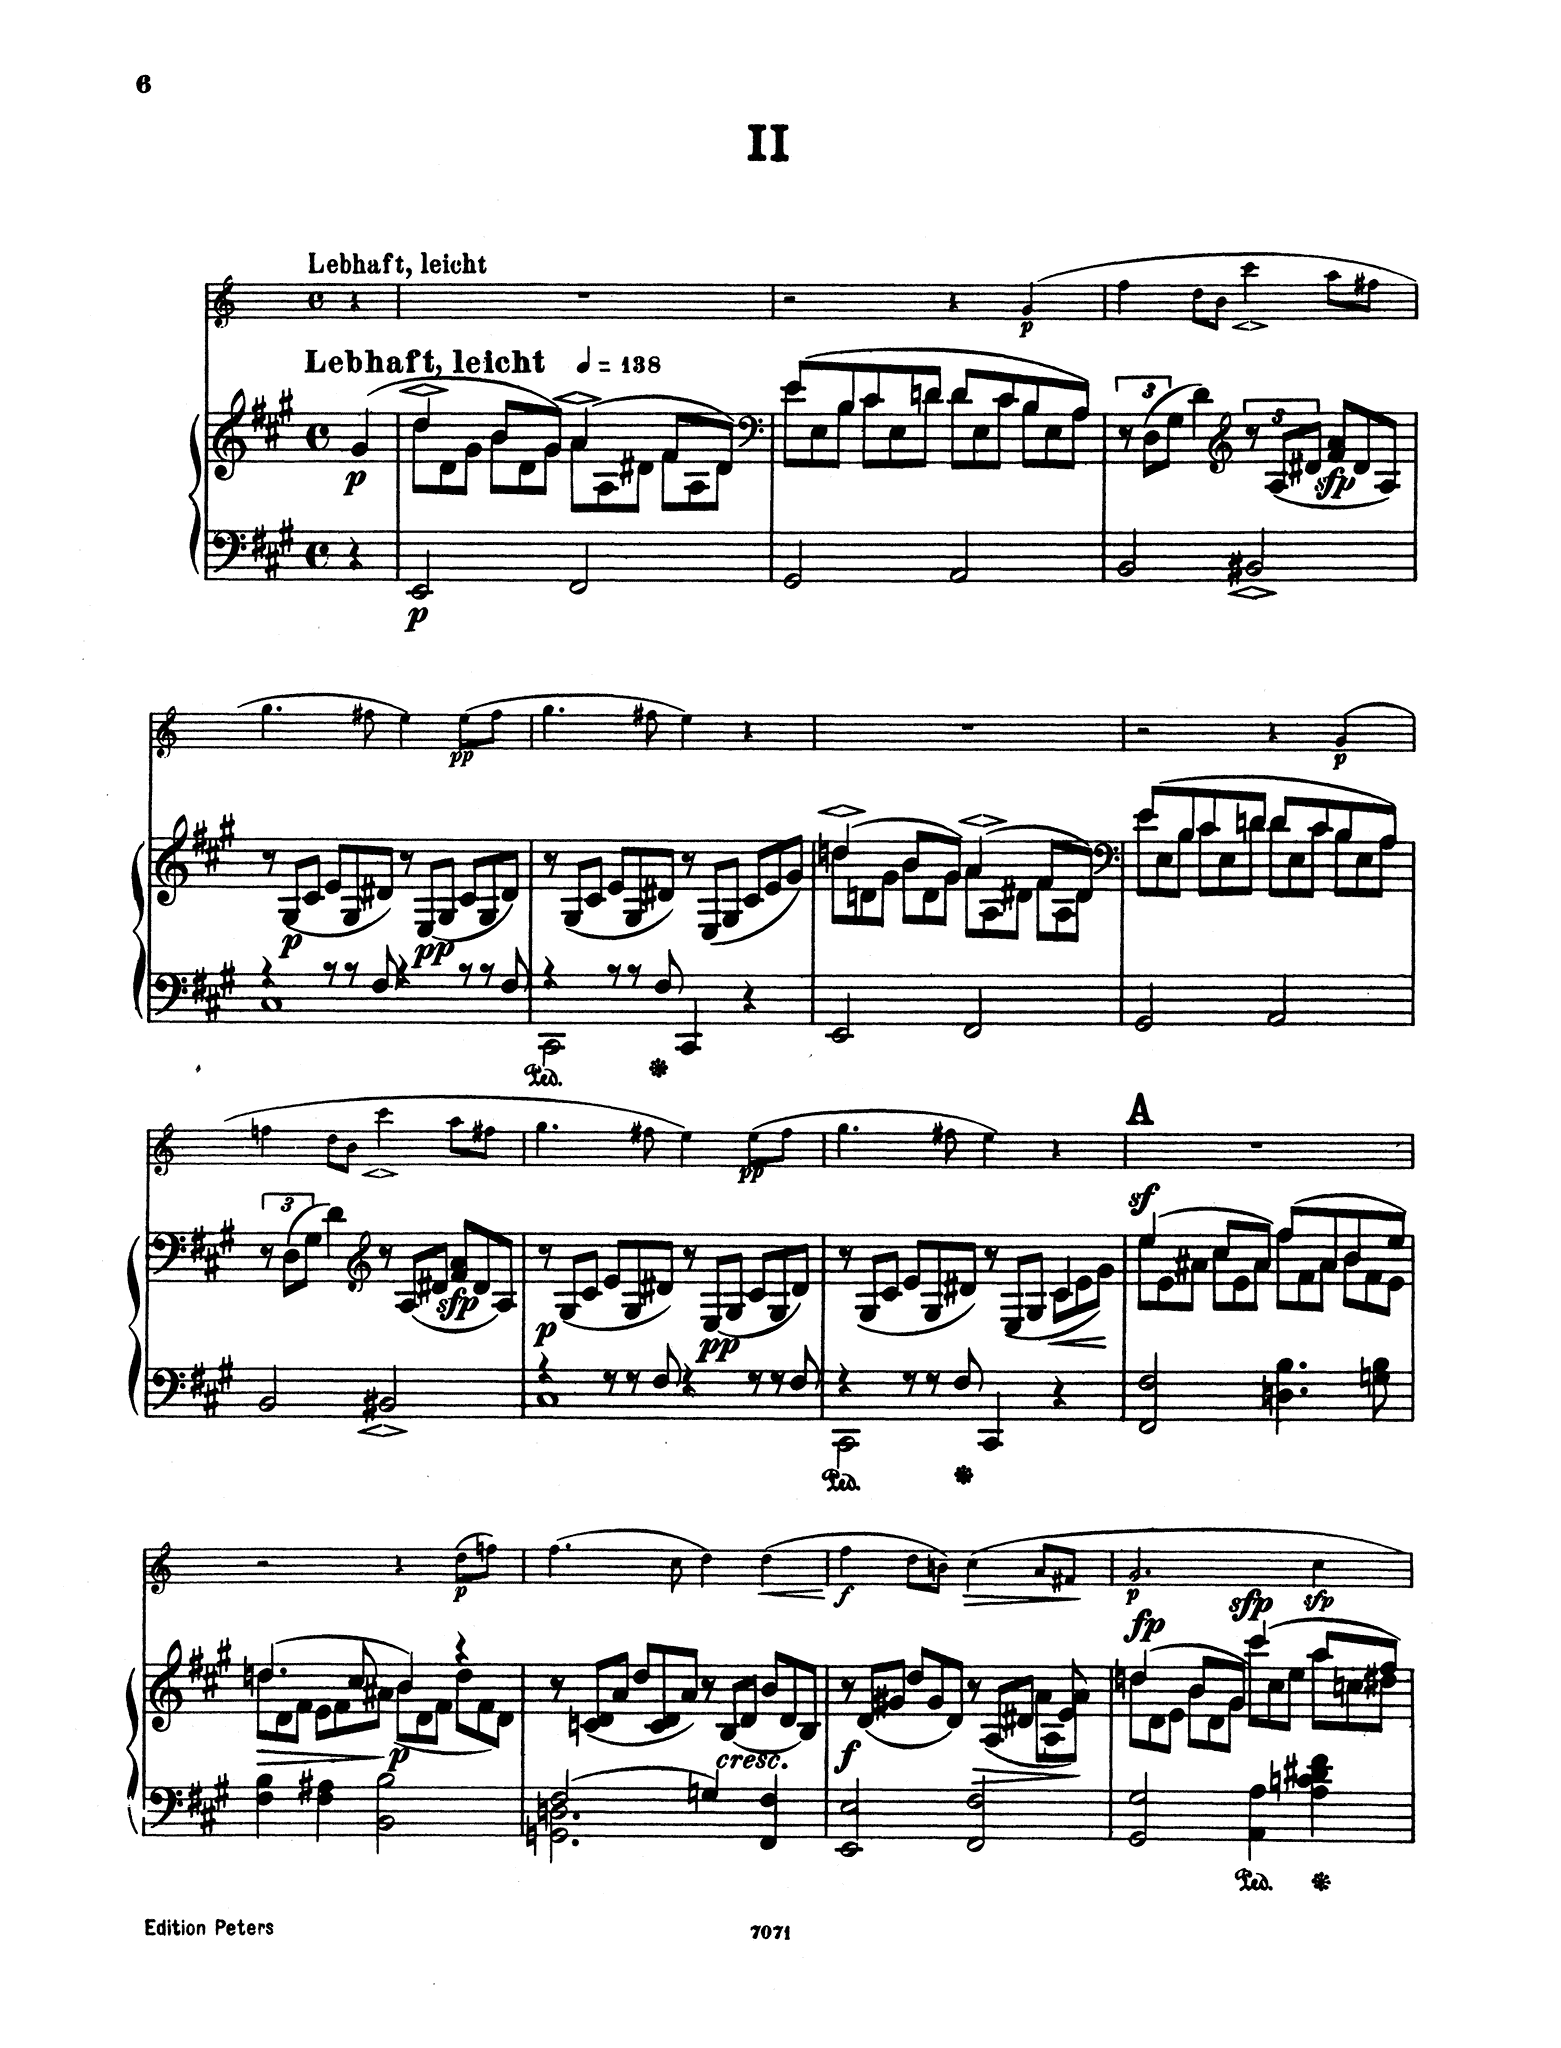 Fantasiestücke, Op. 73 - Movement 2